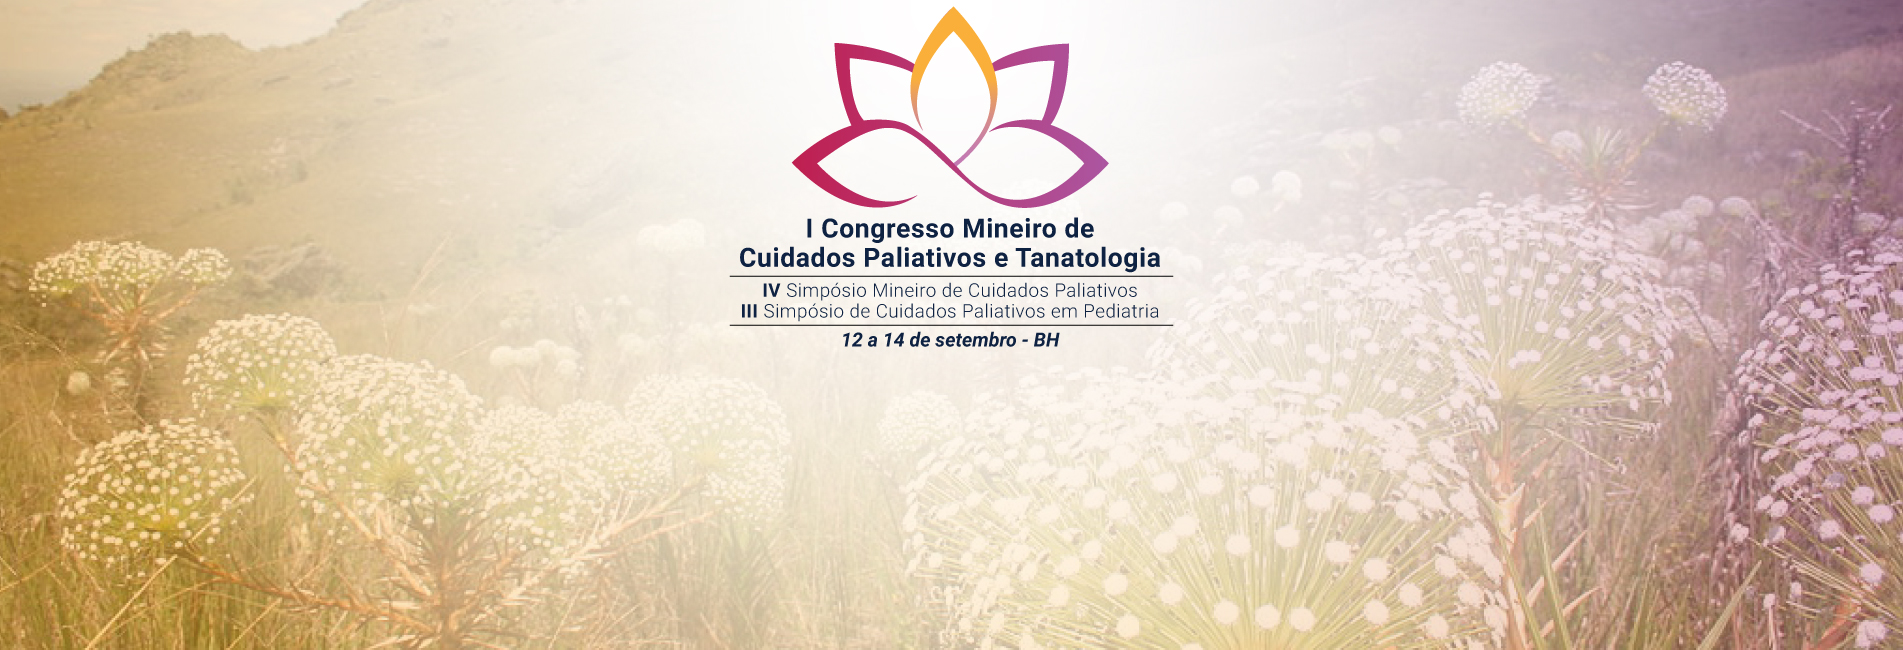 I Congresso Mineiro de Cuidados Paliativos e Tanatologia está com inscrições abertas